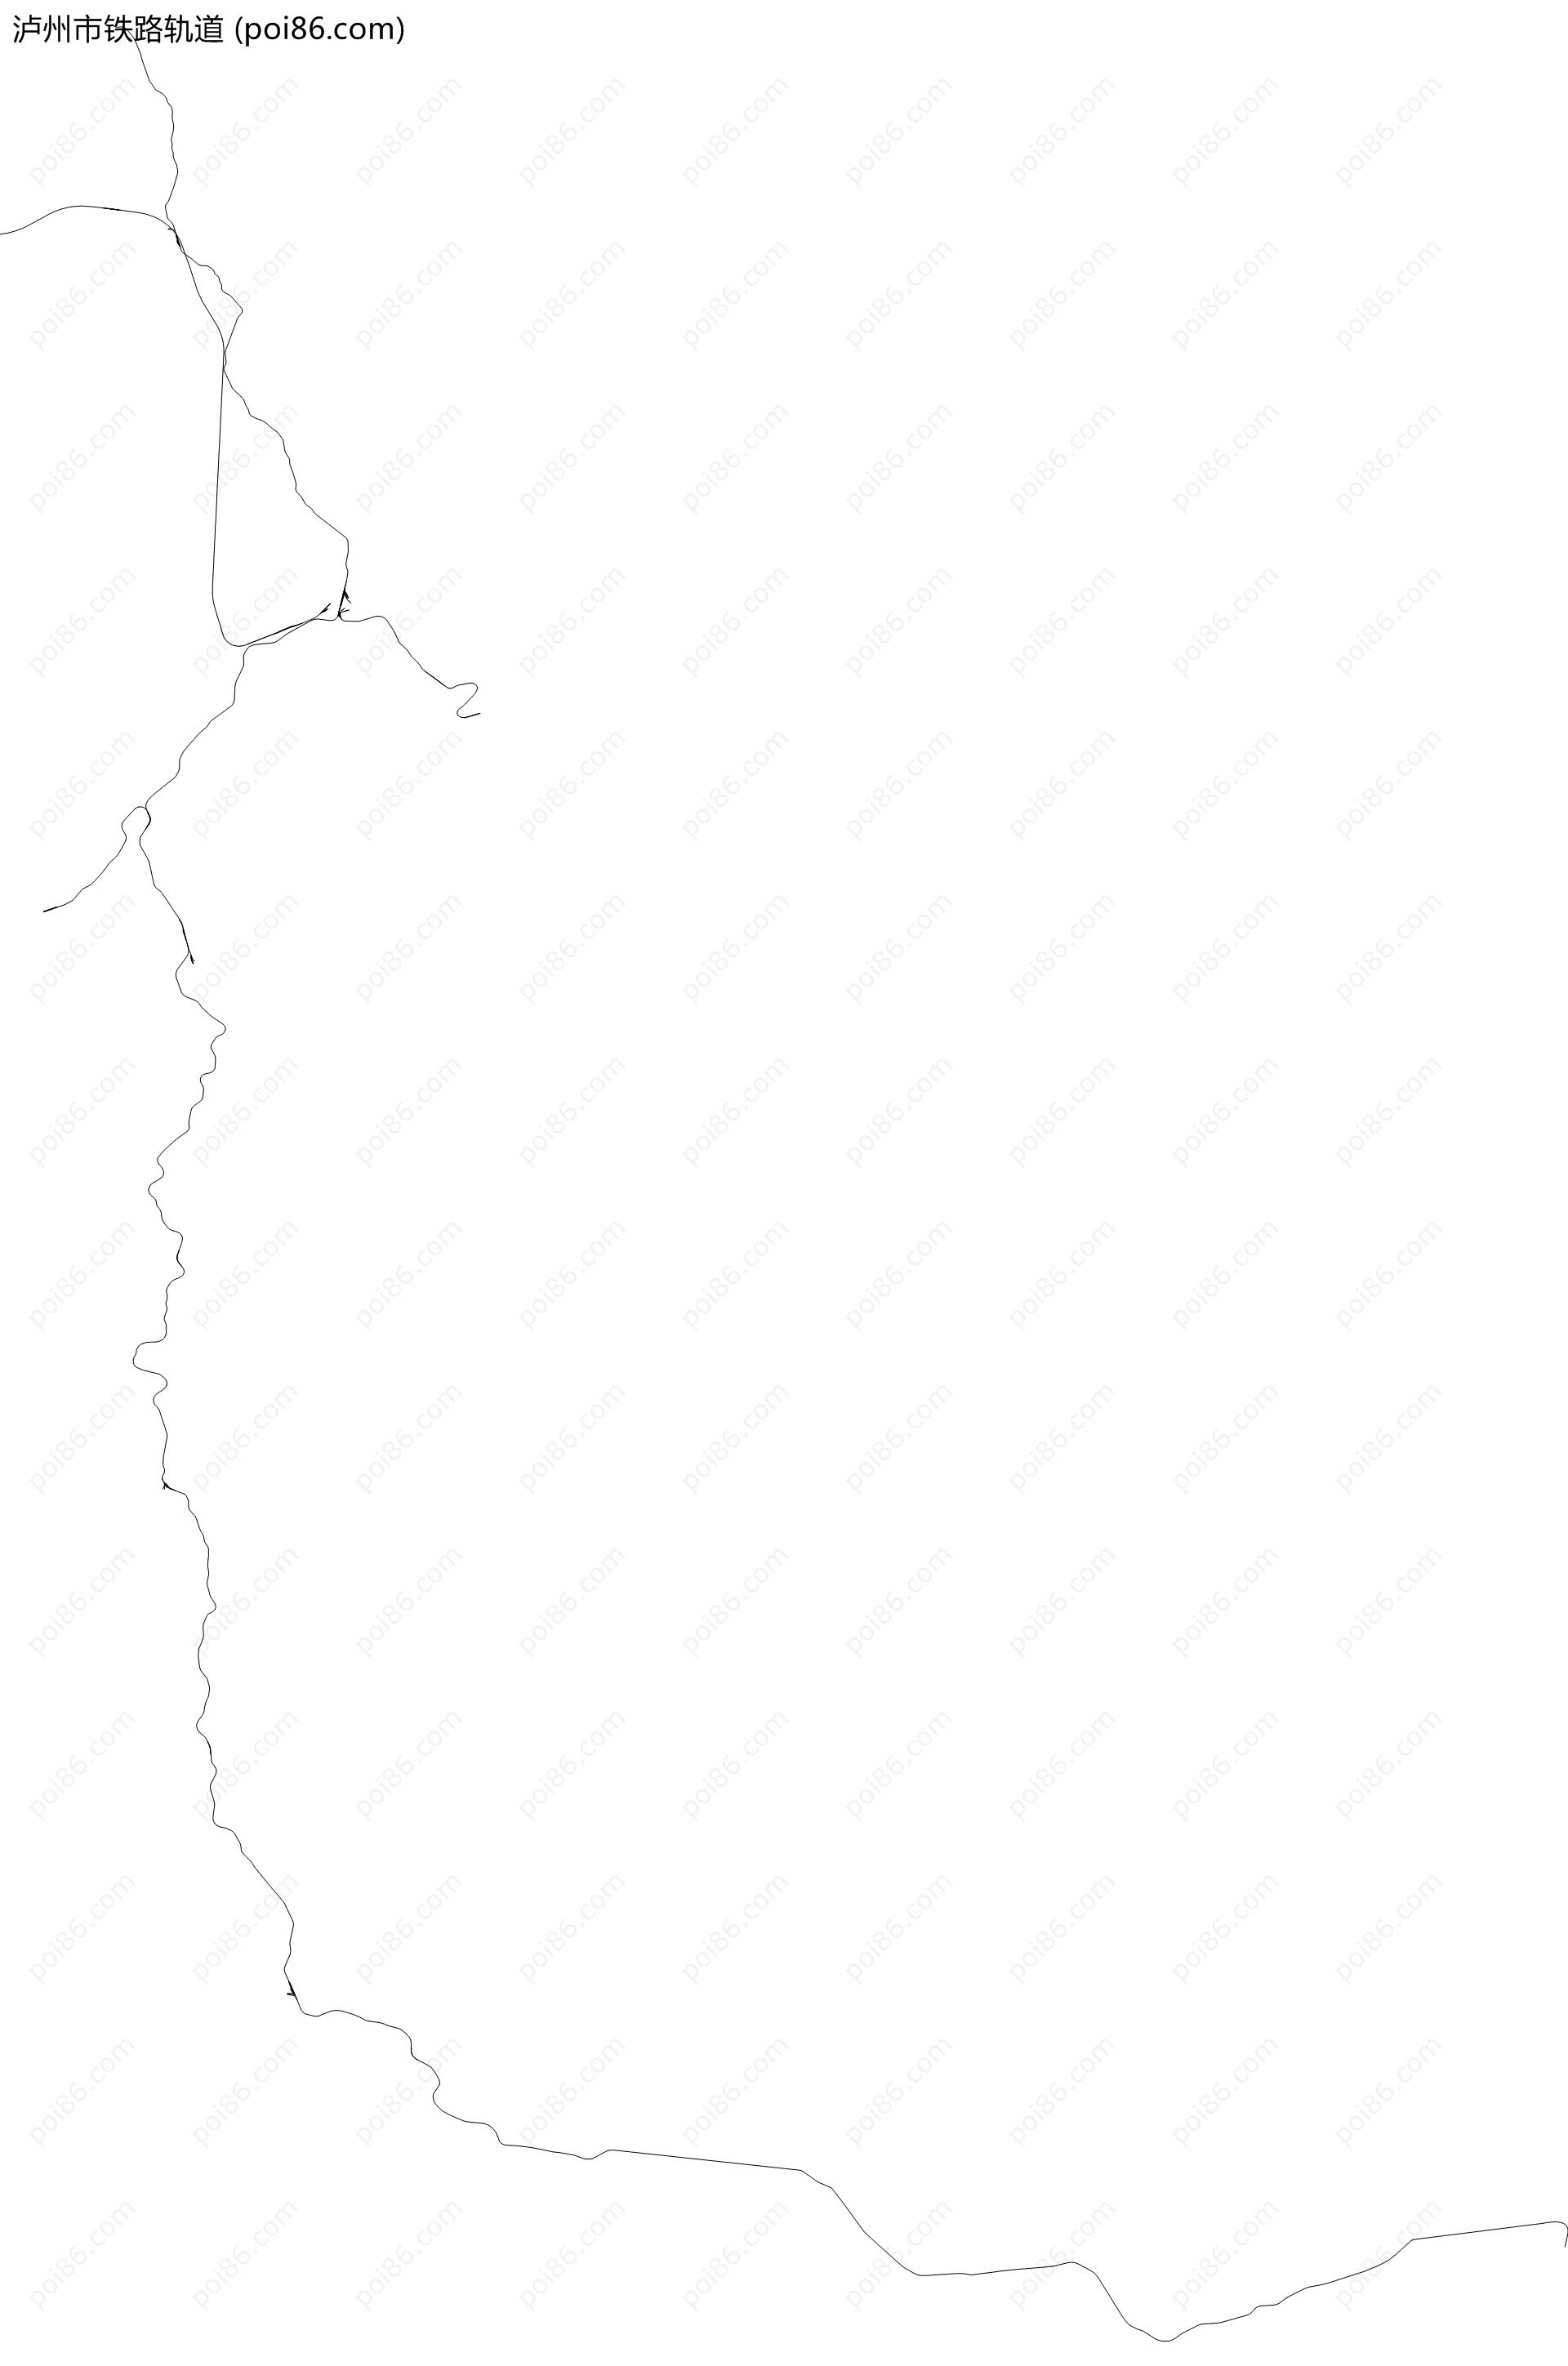 泸州市铁路轨道地图